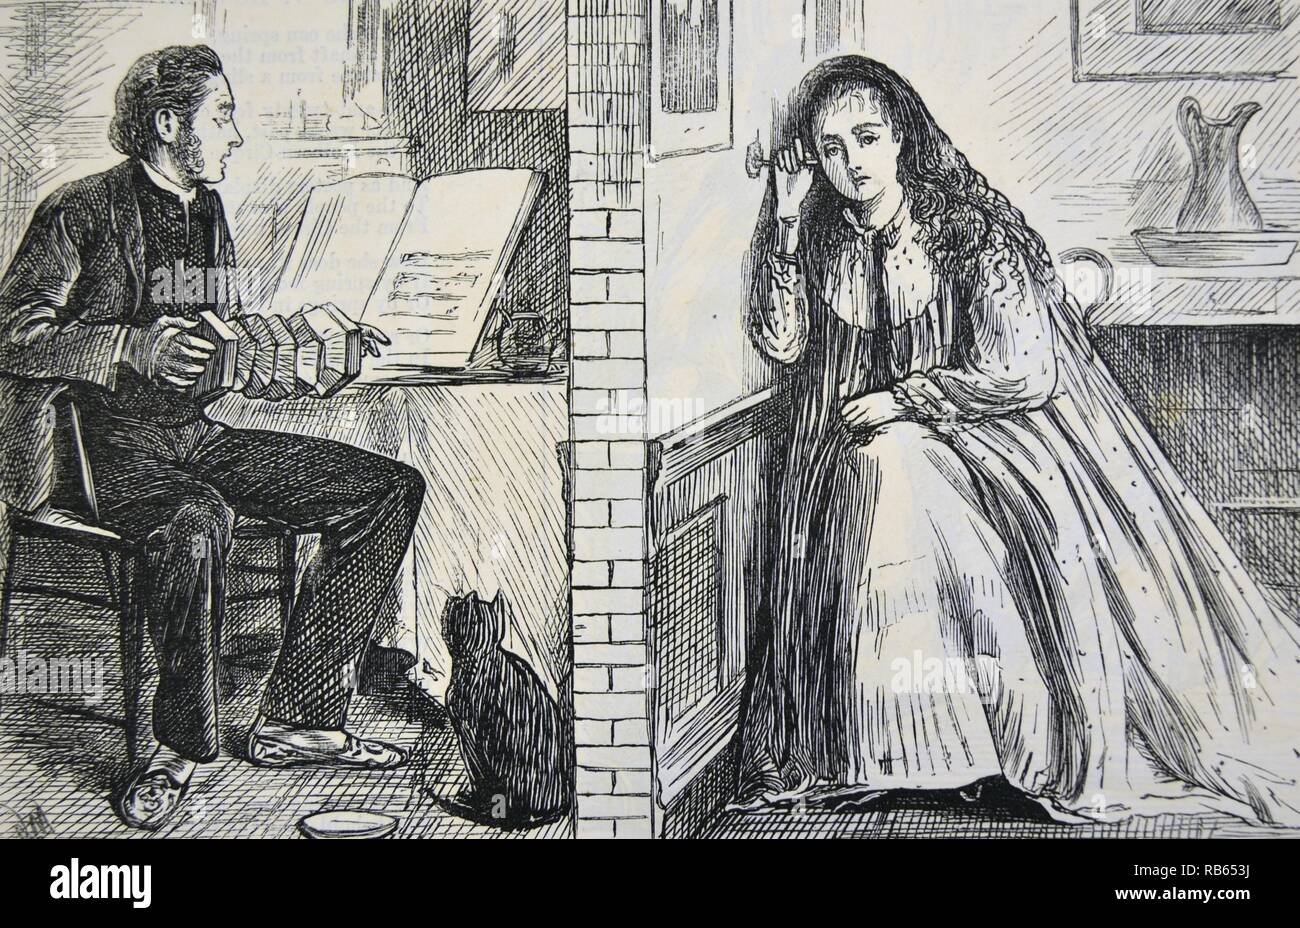 Schwingung der Sound: Mädchen mit einem stethscope gegen die Wand gedrückt zu hören zu kuratieren, die Musik im Haus nebenan. Cartoon von George Du Maurier von ''Punch'', London, 1871. Stockfoto